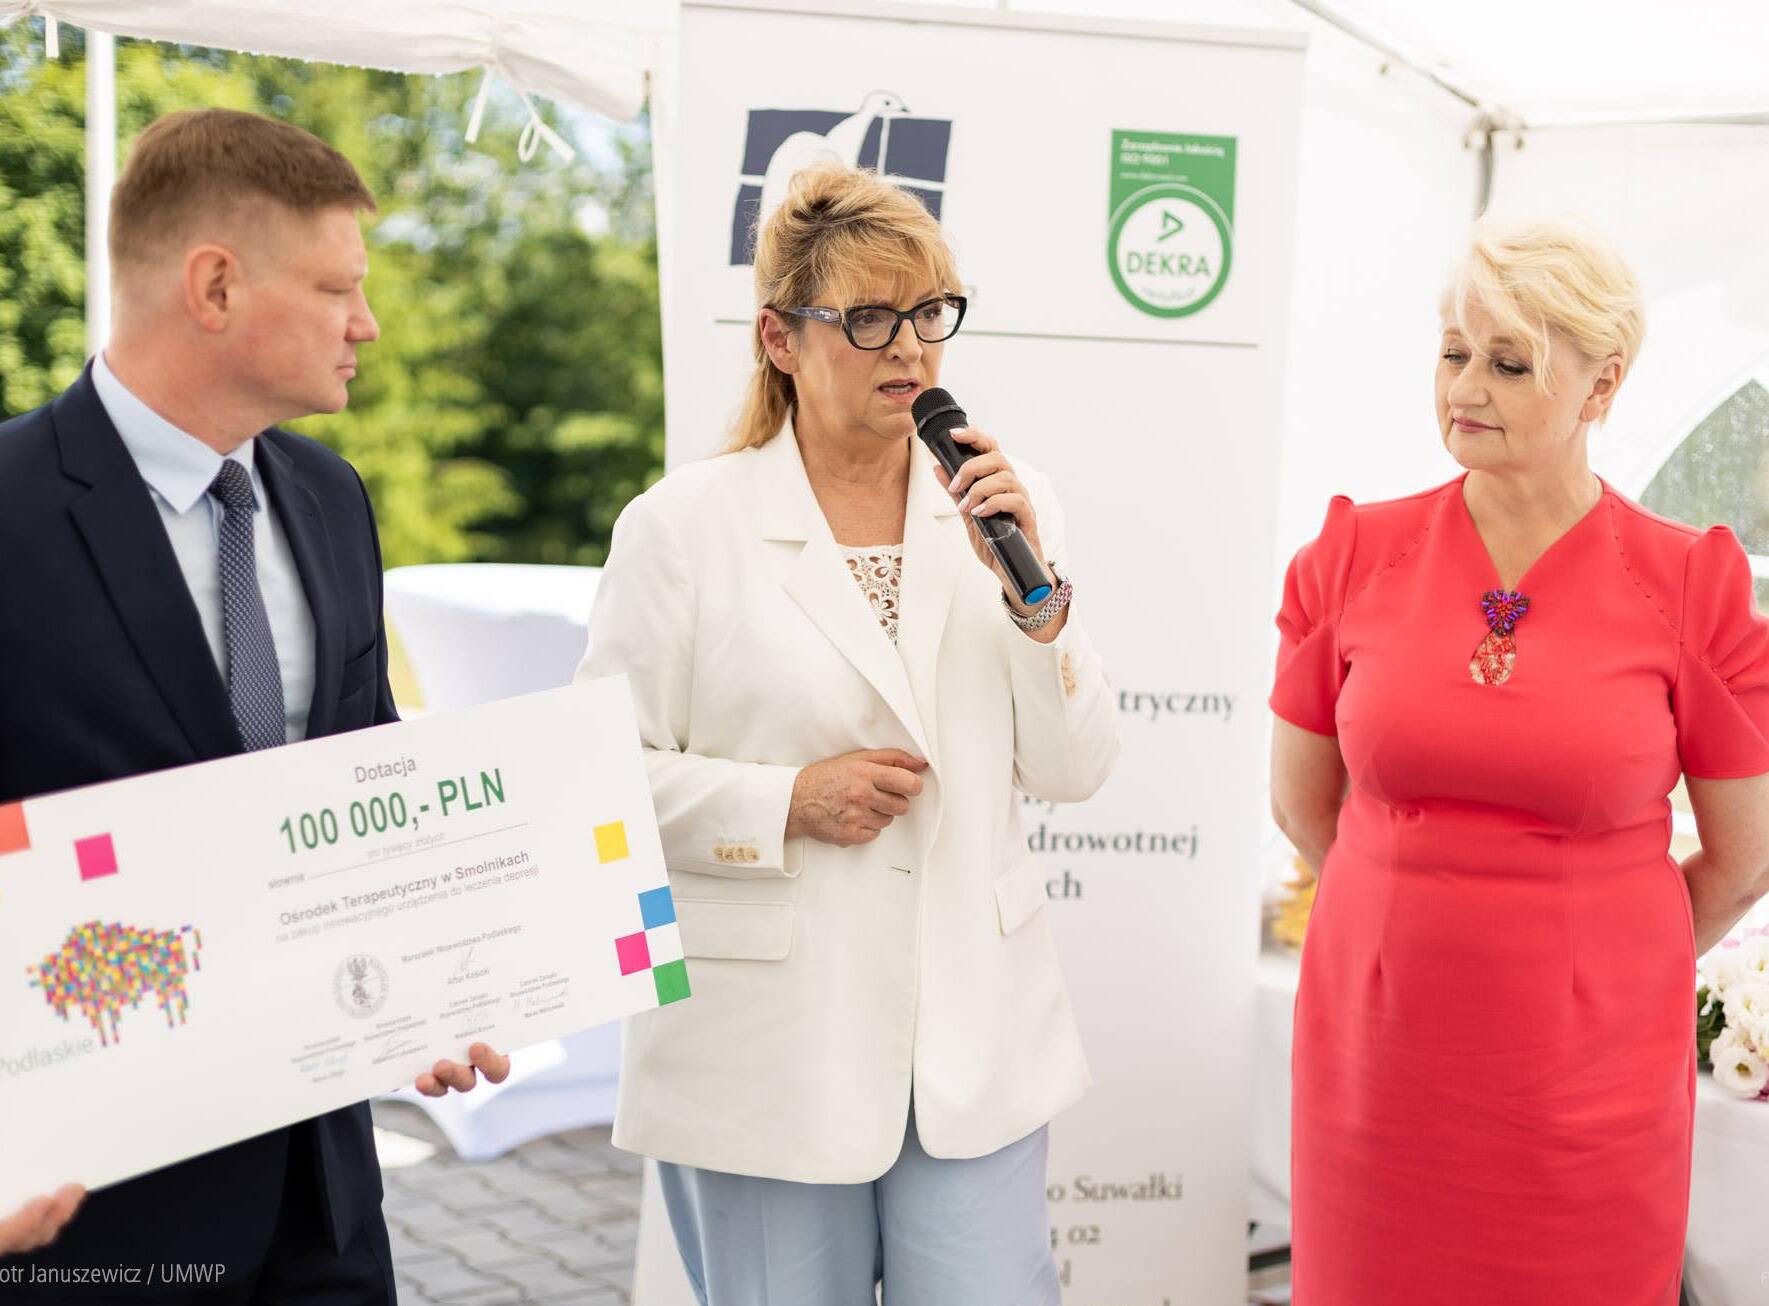 Kobieta stoi między dwoma członkami zarządu i trzyma w dłoni czek na kwotę 100 tys. zł